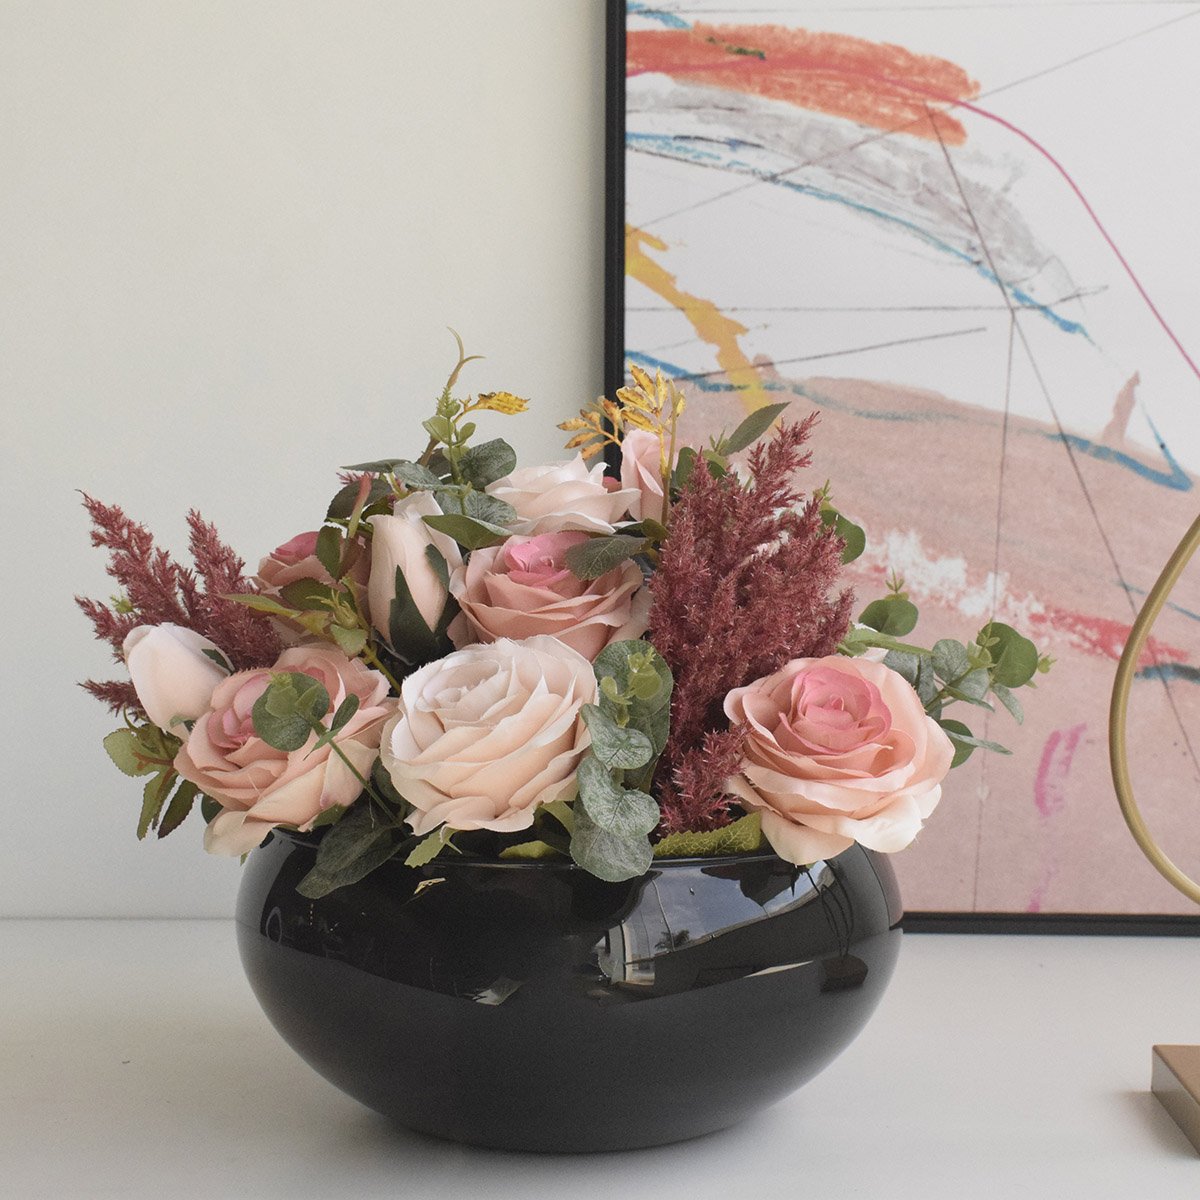 Arranjo de Rosas Rosa e Flores Envelhecidas no Vaso de Vidro Preto |linha Permanente Formosinha - 1